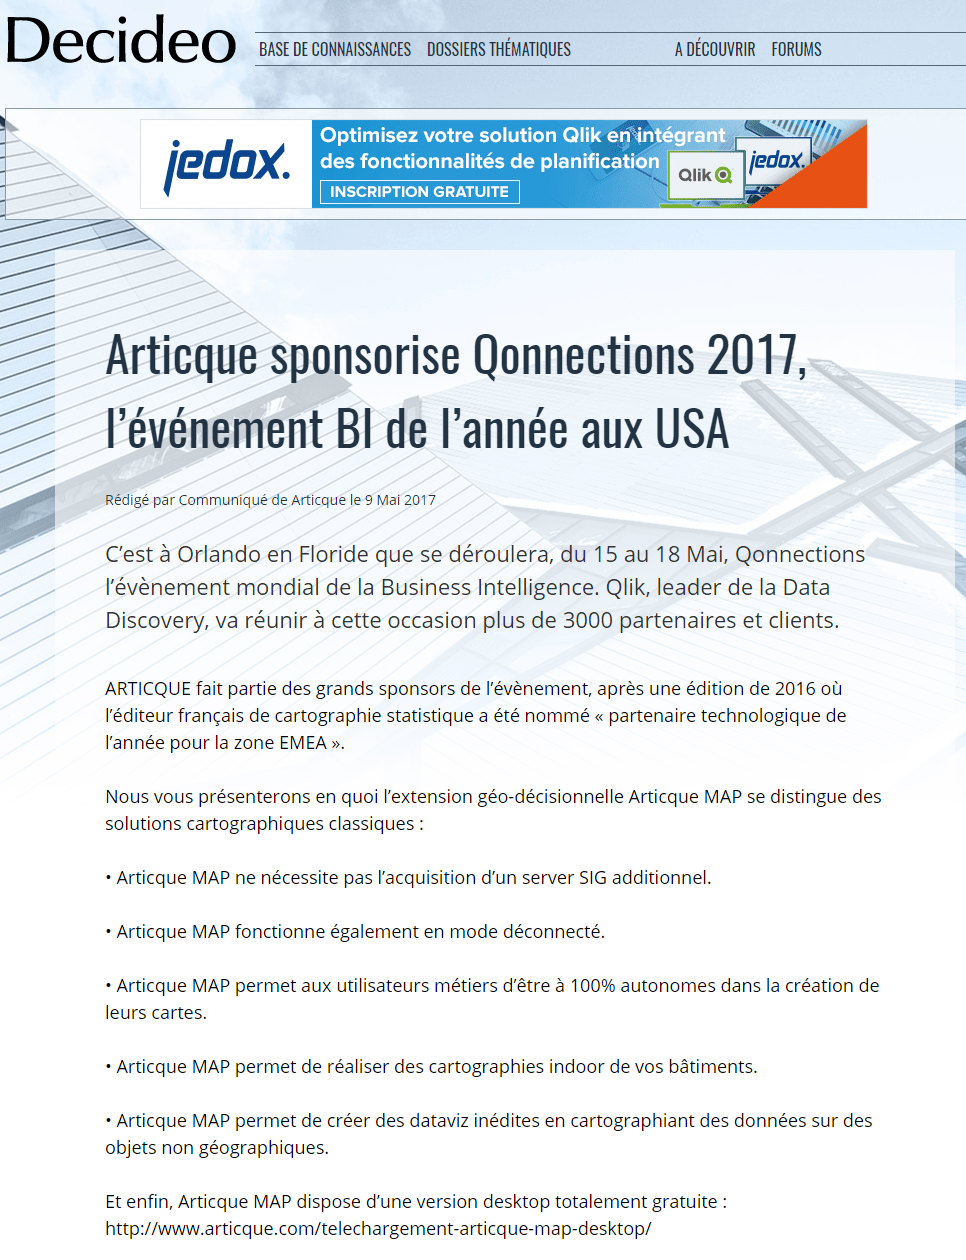 Articque sponsorise Qonnections 2017